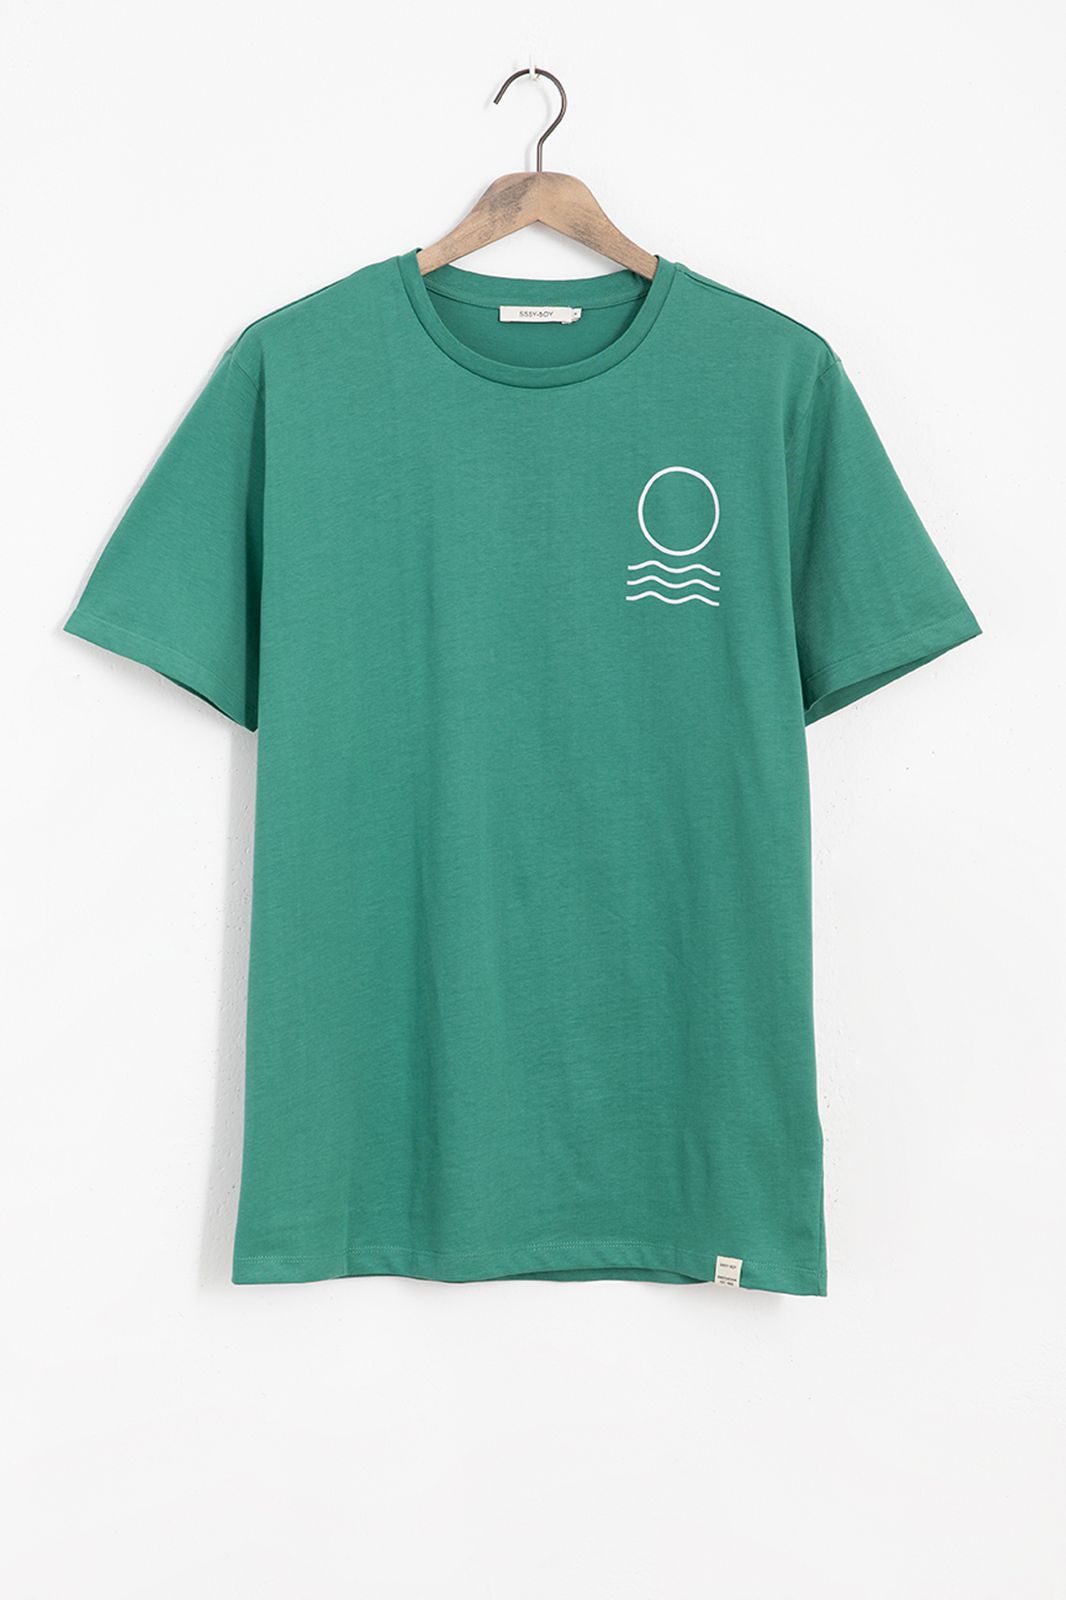 Groen T-shirt met print op rug - Heren | Sissy-Boy